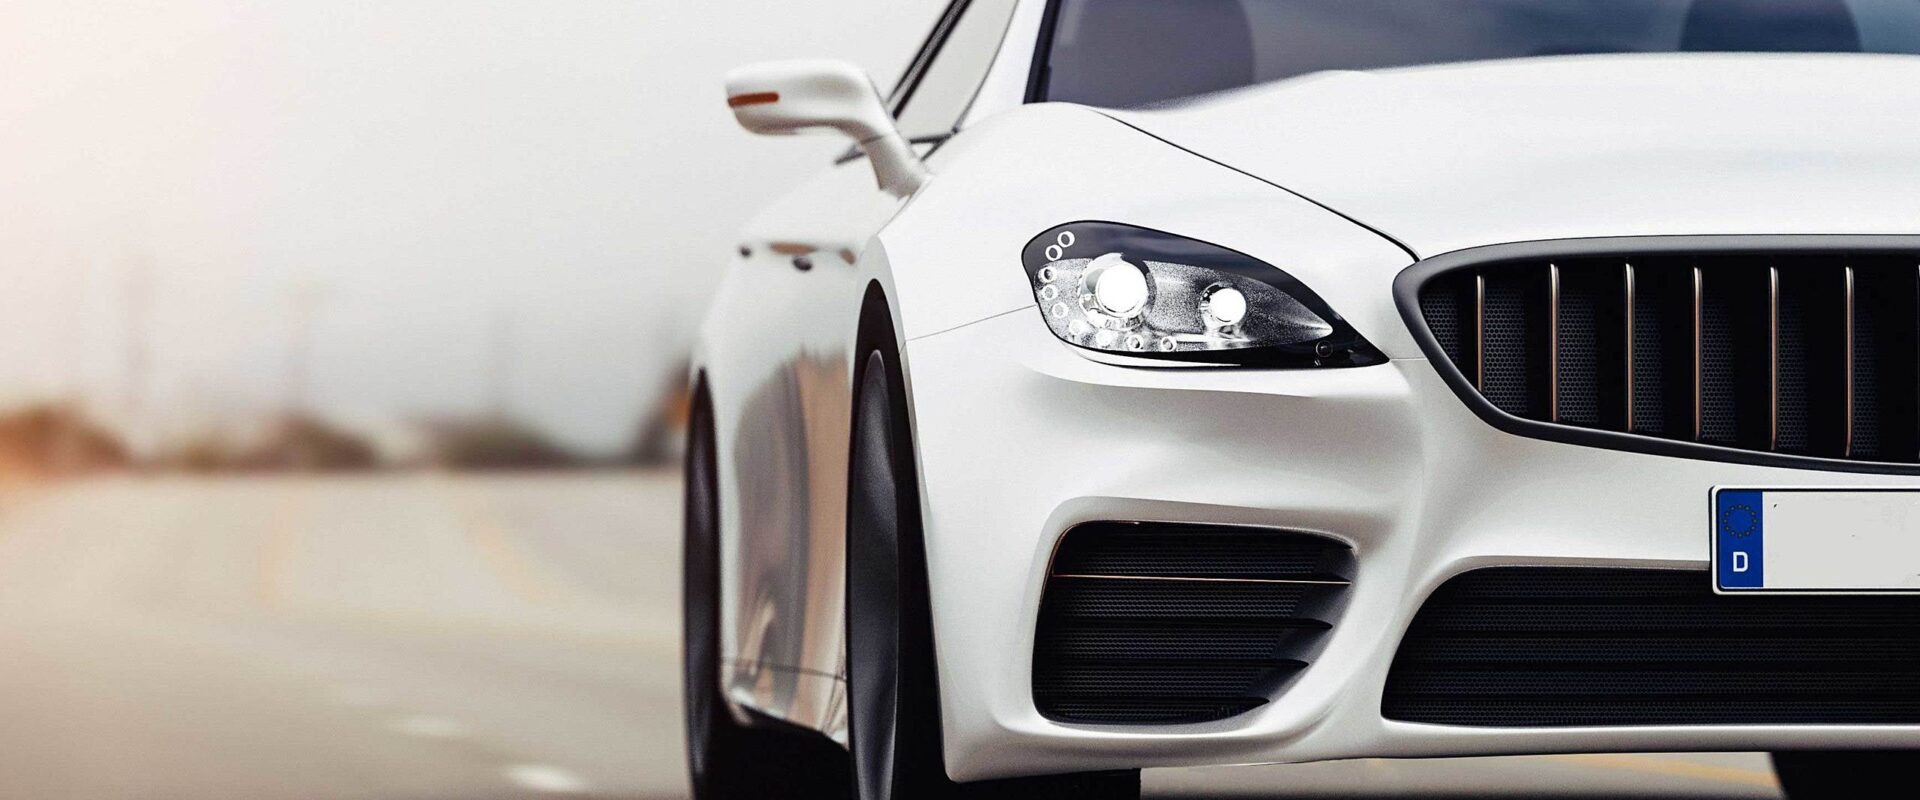 5 dicas essenciais para conservar carro de luxo branco